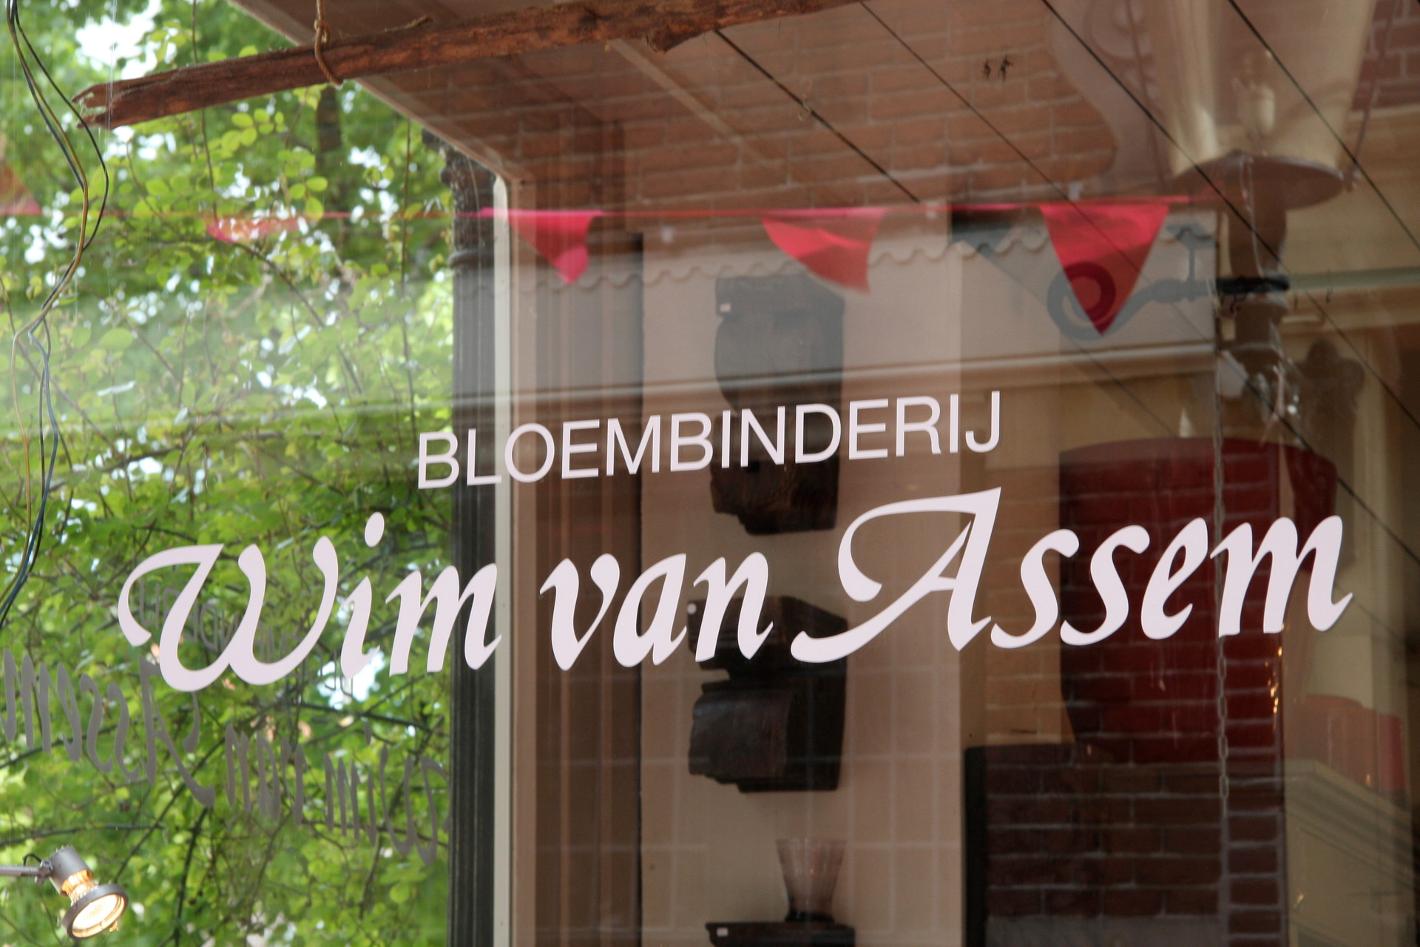 Foto Wim van Assem bloembinderij in Alkmaar, Winkelen, Geschenken kopen, Woonaccessoires wonen - #1